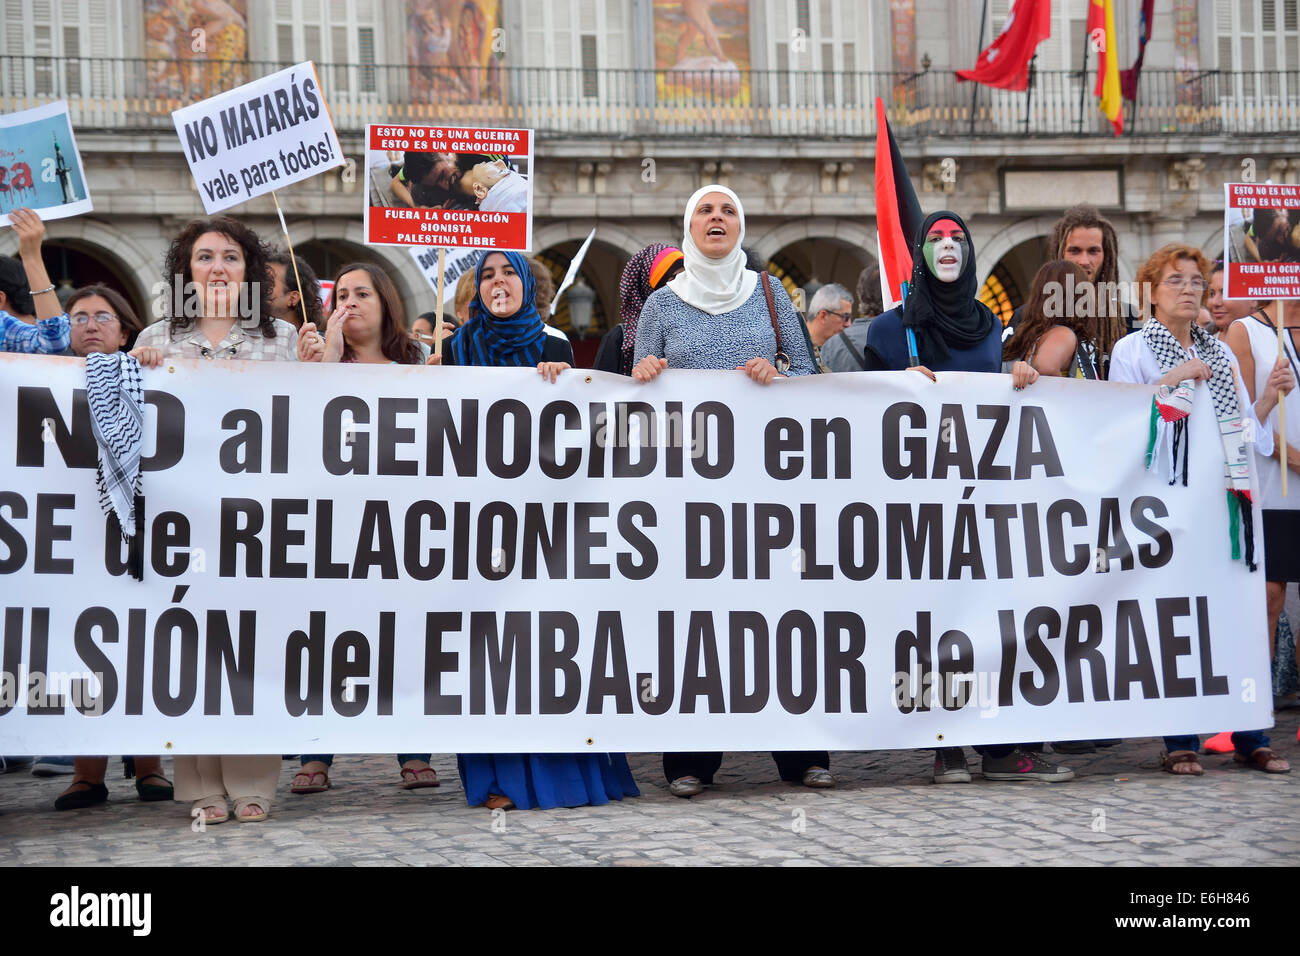 Banner principale di una protesta contro Israele durante una dimostrazione il supporto di palestinesi, a Madrid il 14 agosto 2014. Spagna. Foto Stock